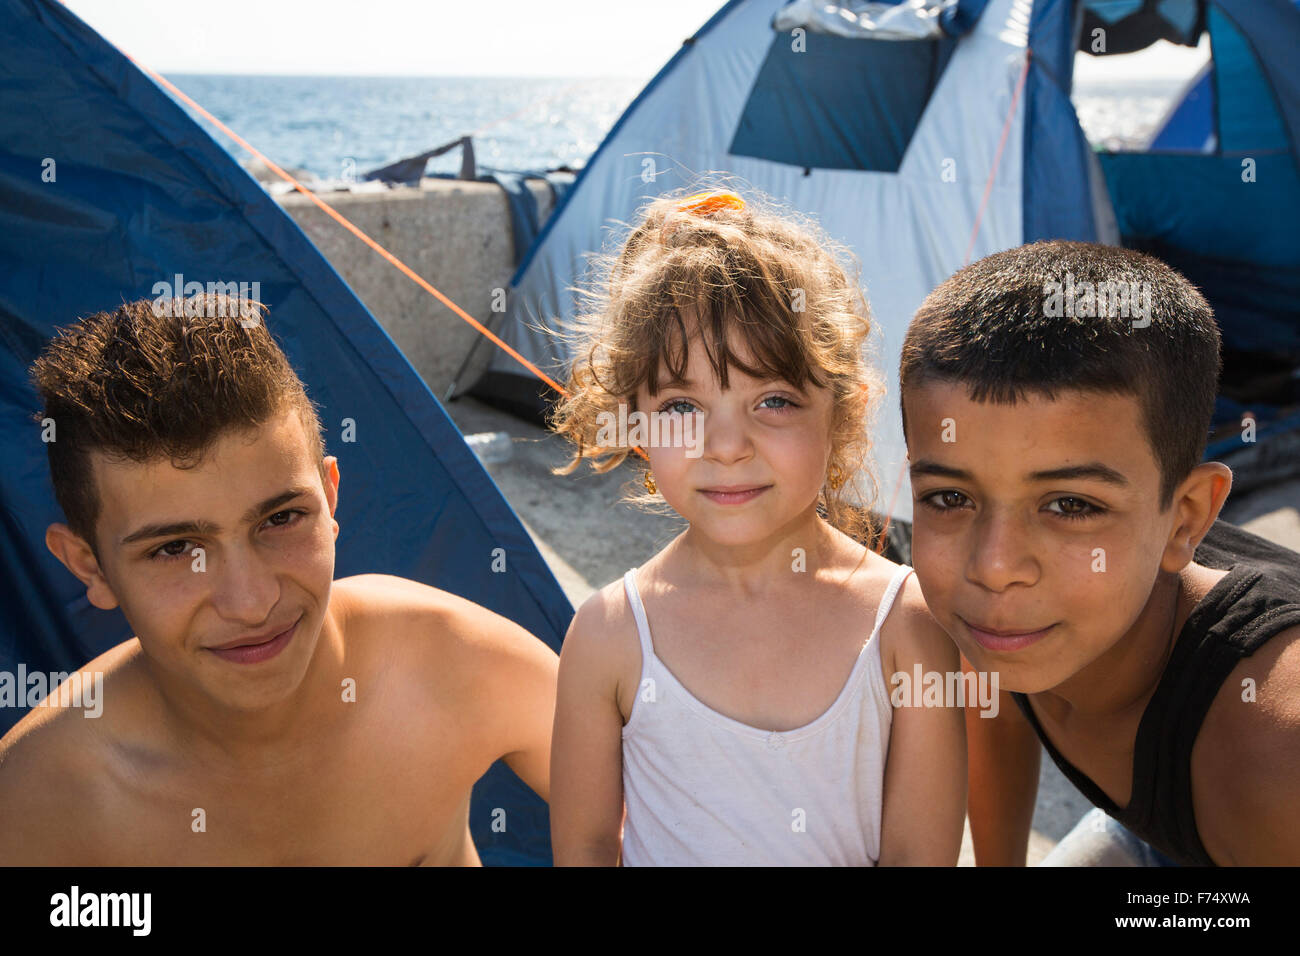 Migrantes sirios que huían de la guerra y escapar a Europa, que han desembarcado en la isla griega de Lesbos, en la costa norte de EFT Foto de stock